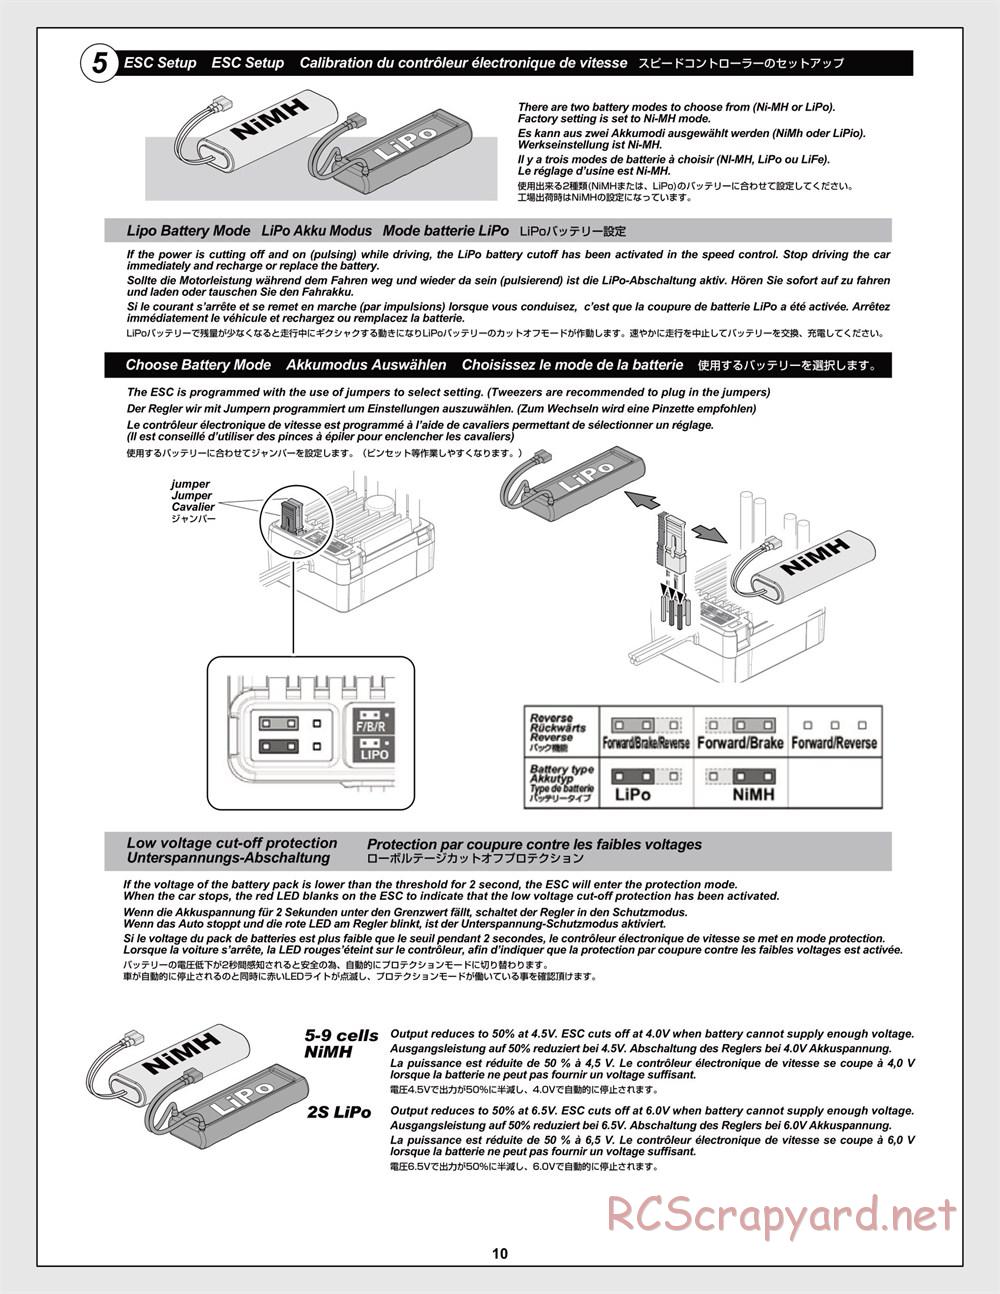 HPI - Jumpshot MT V2 - Manual - Page 10